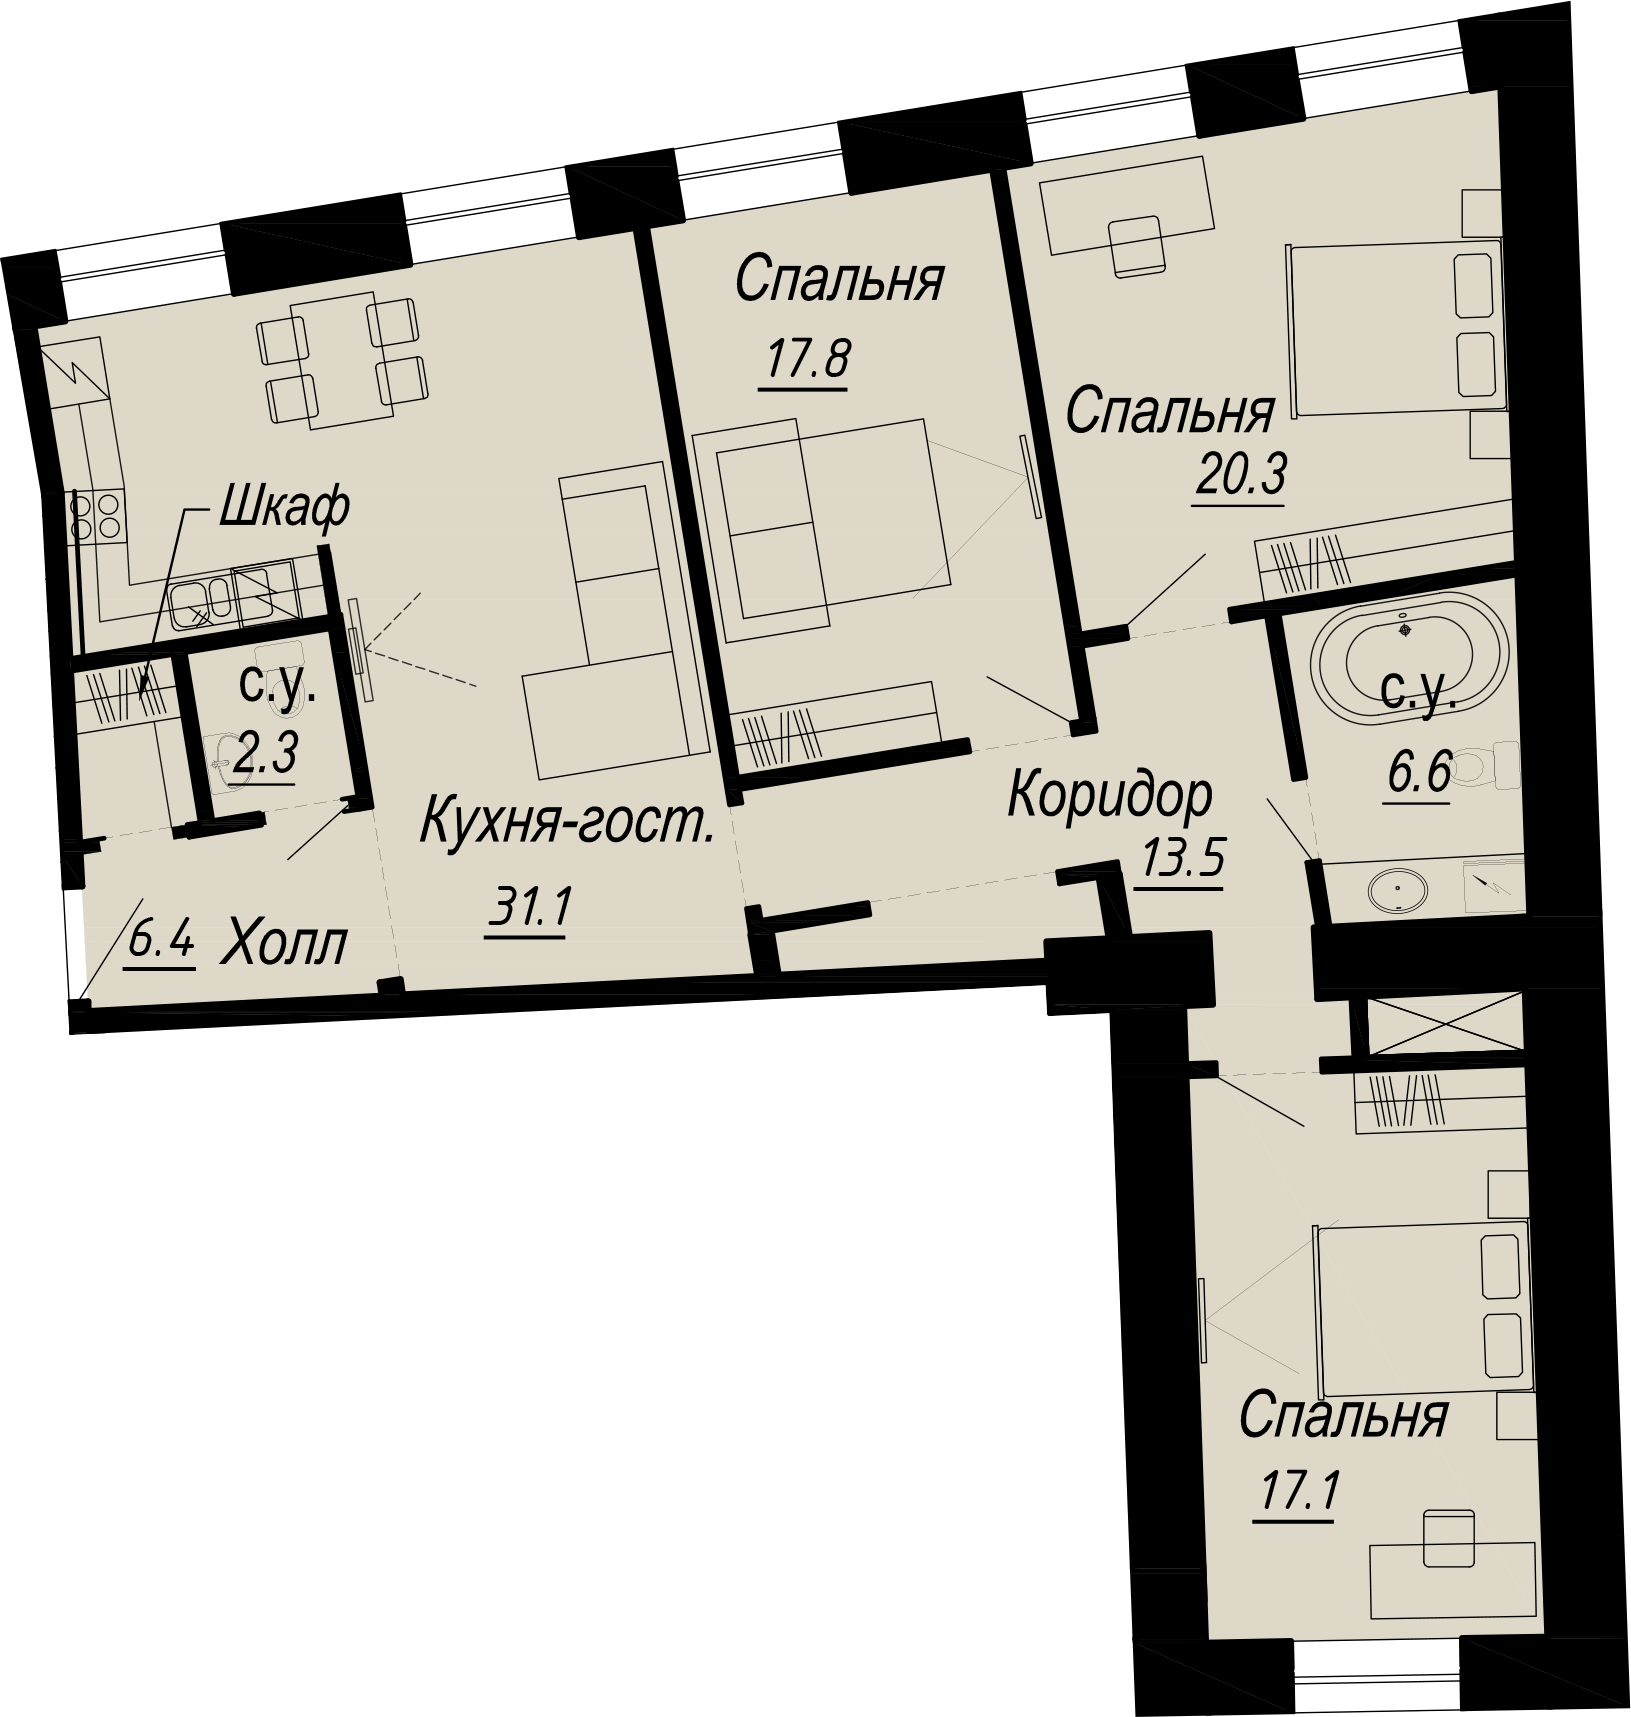 3-комнатная квартира  №18-3 в Meltzer Hall: 117.2 м², этаж 3 - купить в Санкт-Петербурге